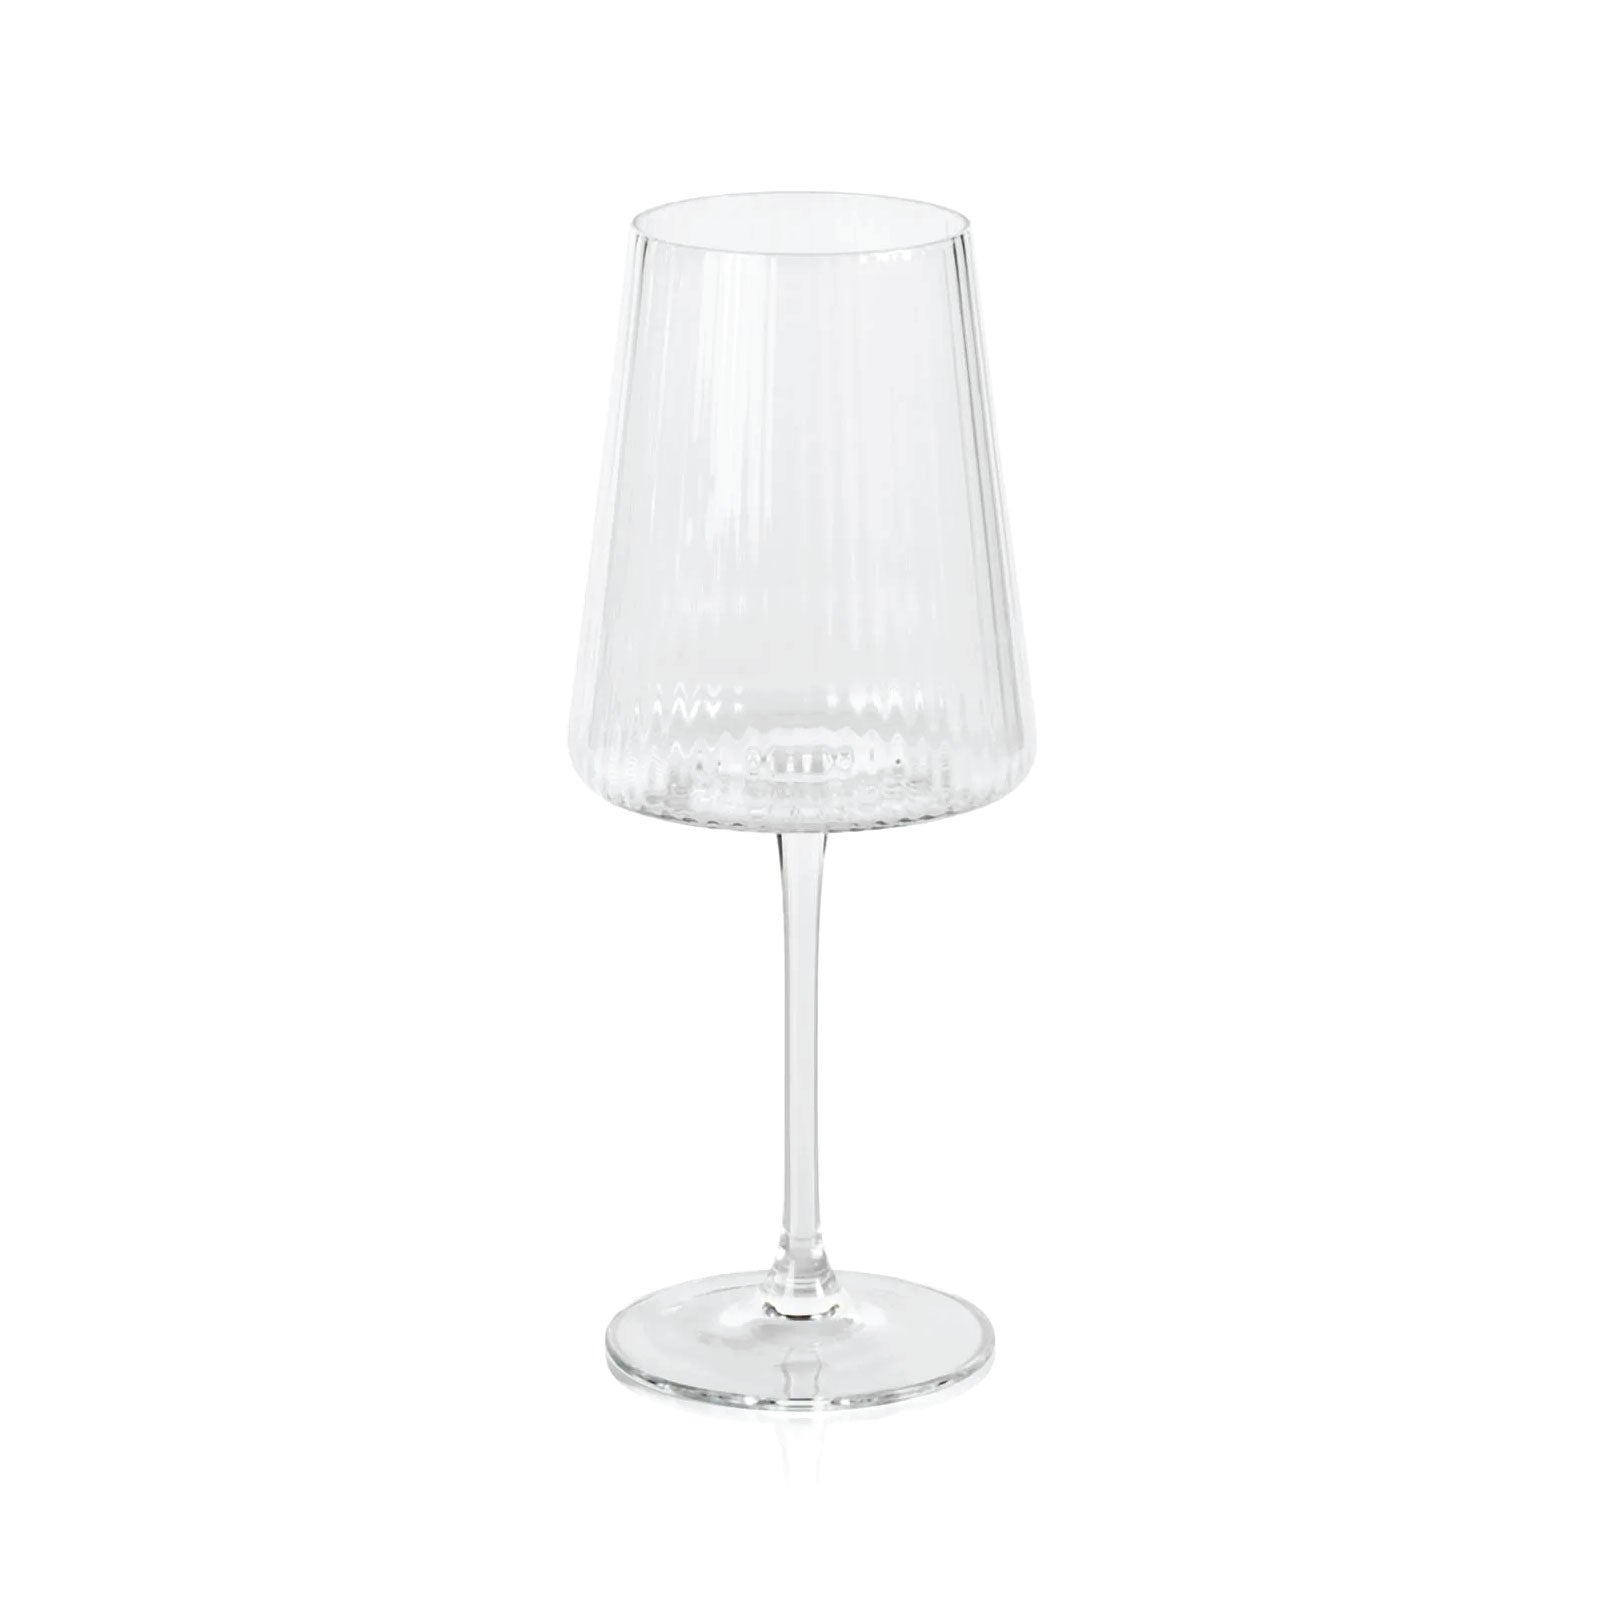 Tulia Wine Glass